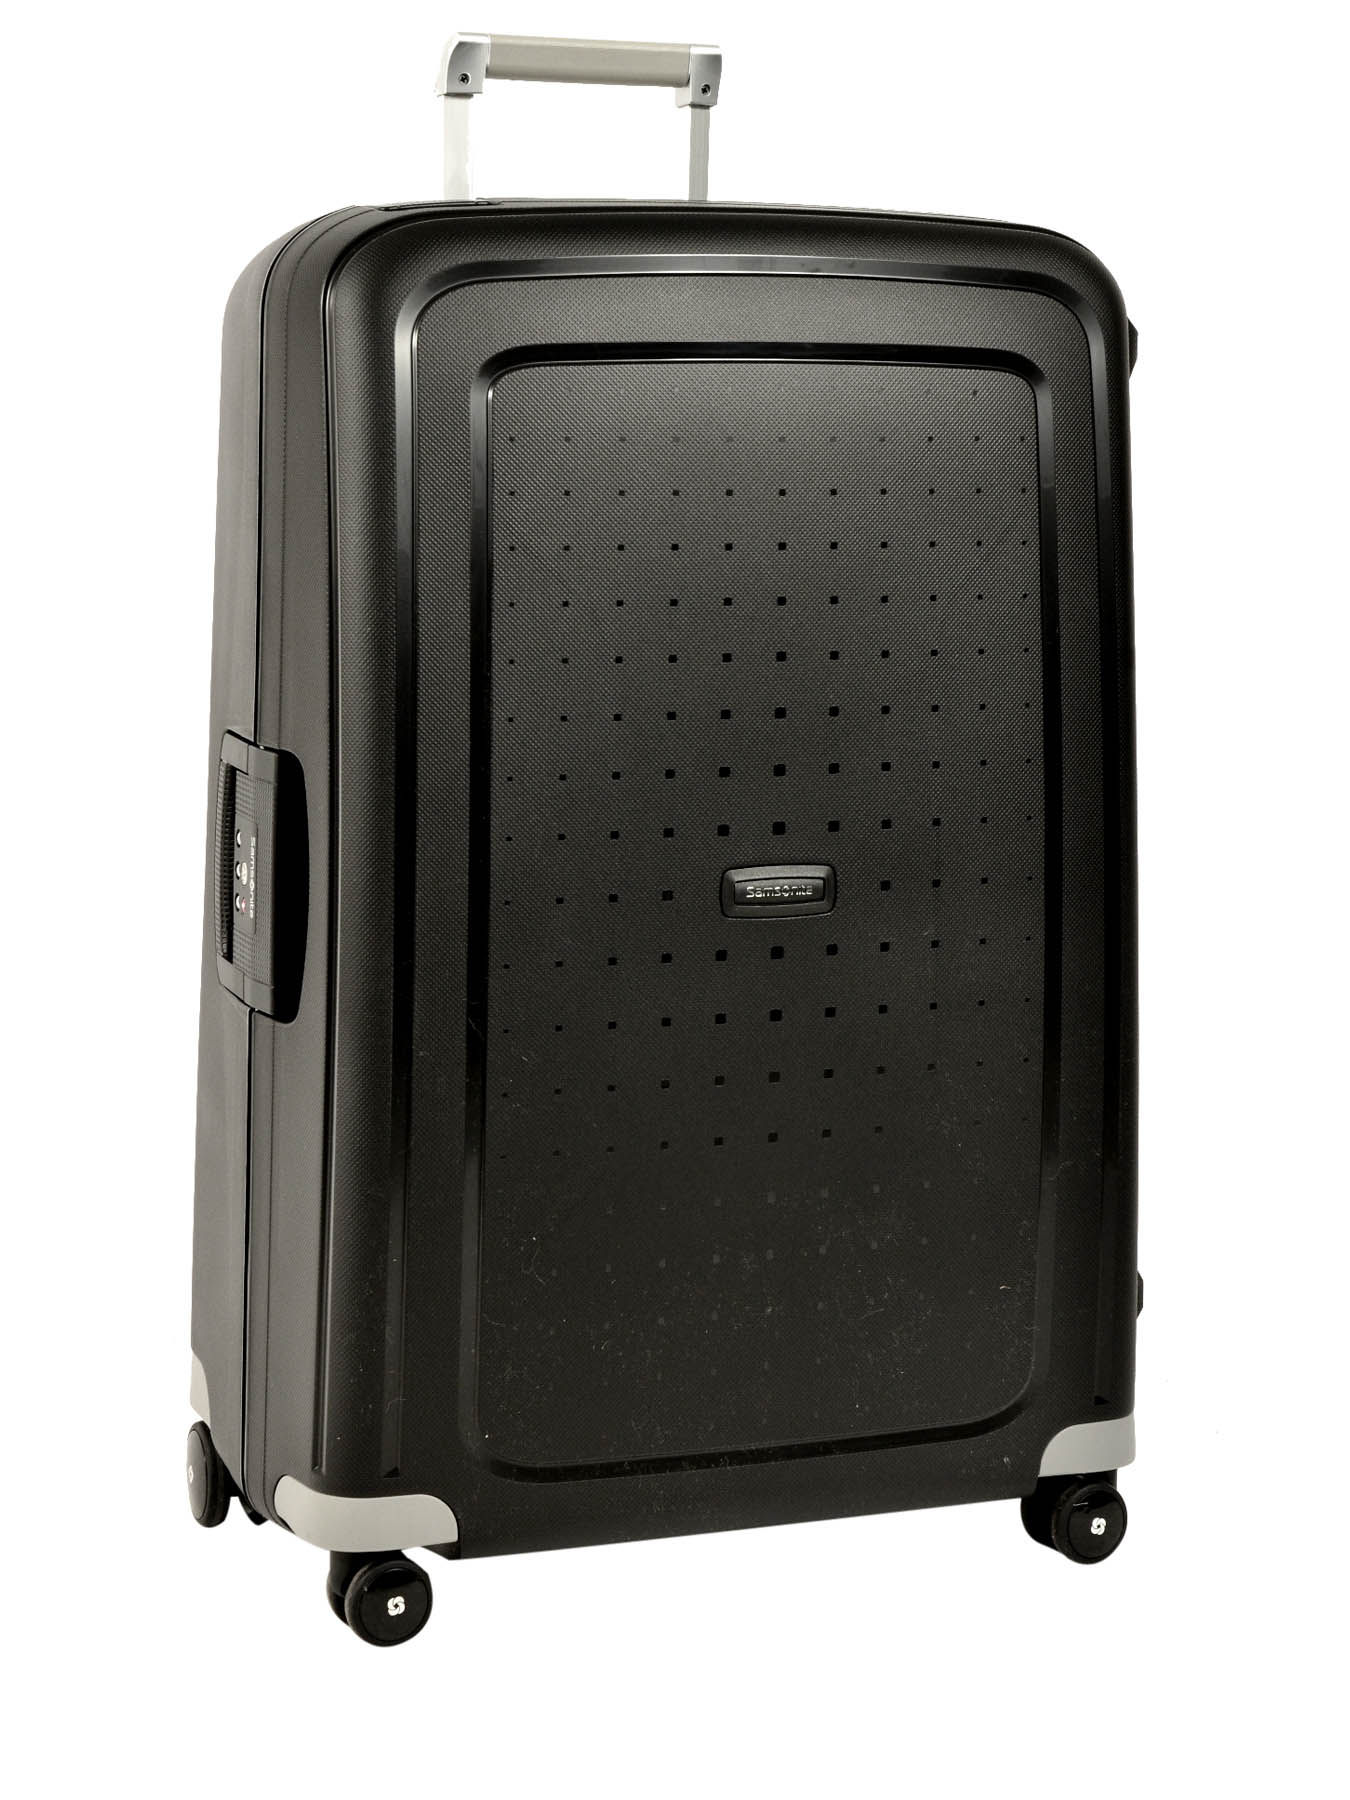 The Best Samsonite Hardside Luggage to Buy - Luggage Unpacked